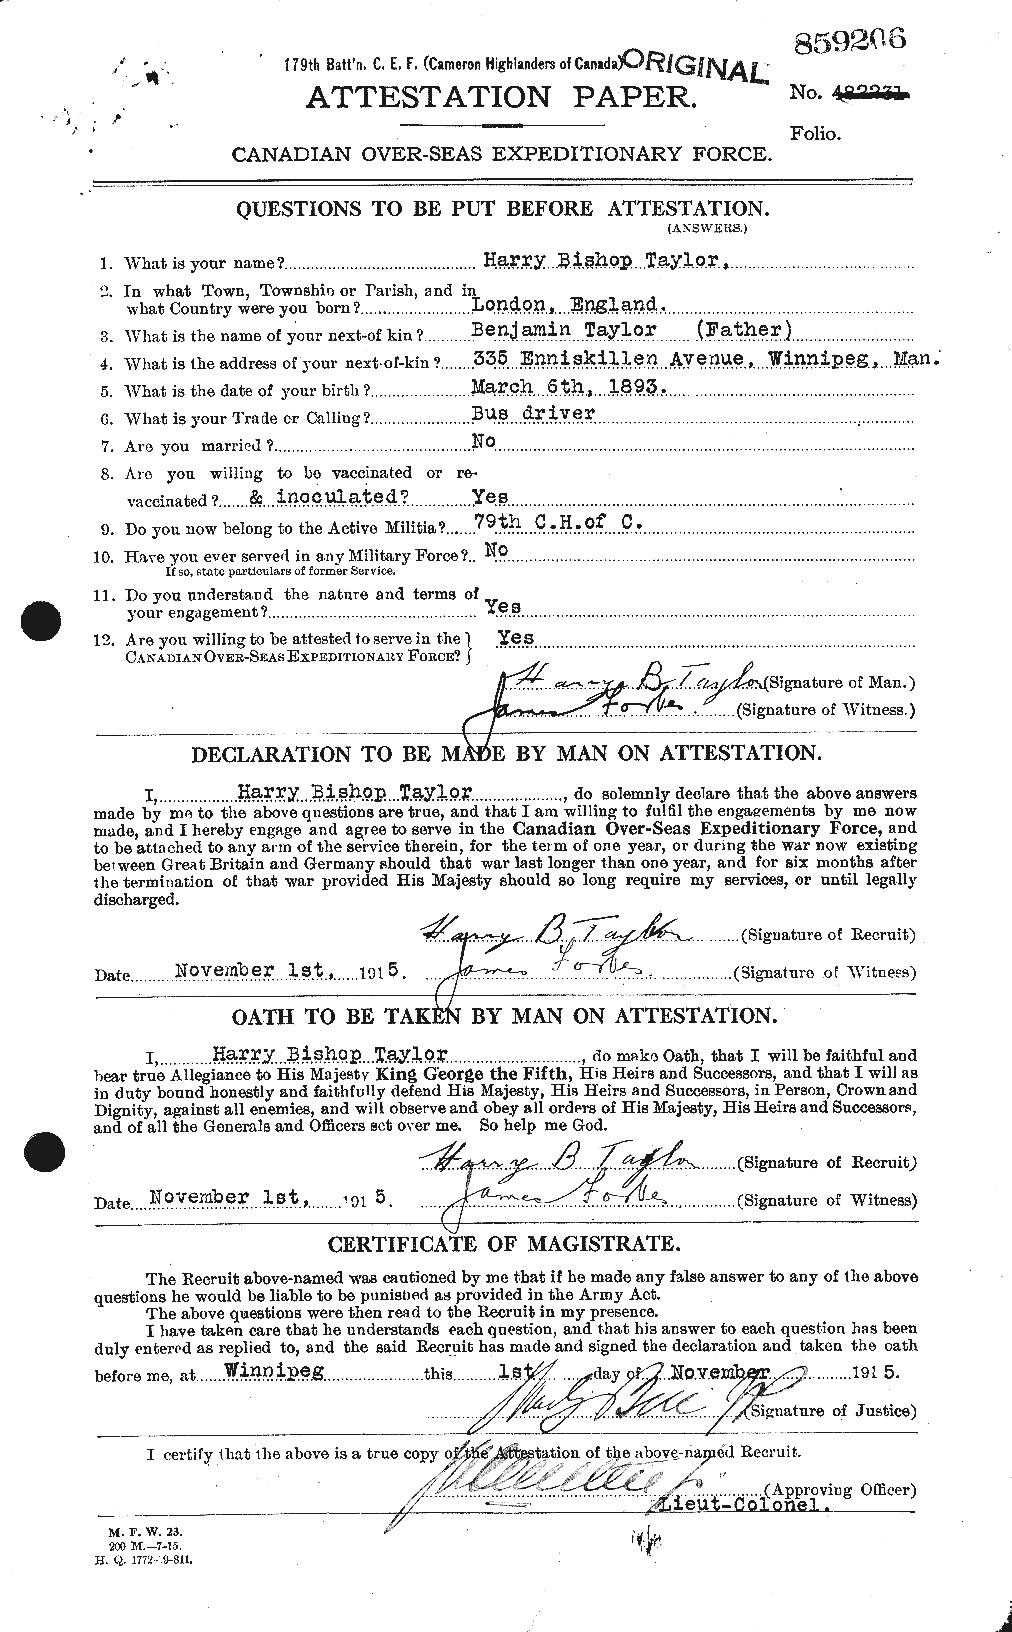 Dossiers du Personnel de la Première Guerre mondiale - CEC 626485a